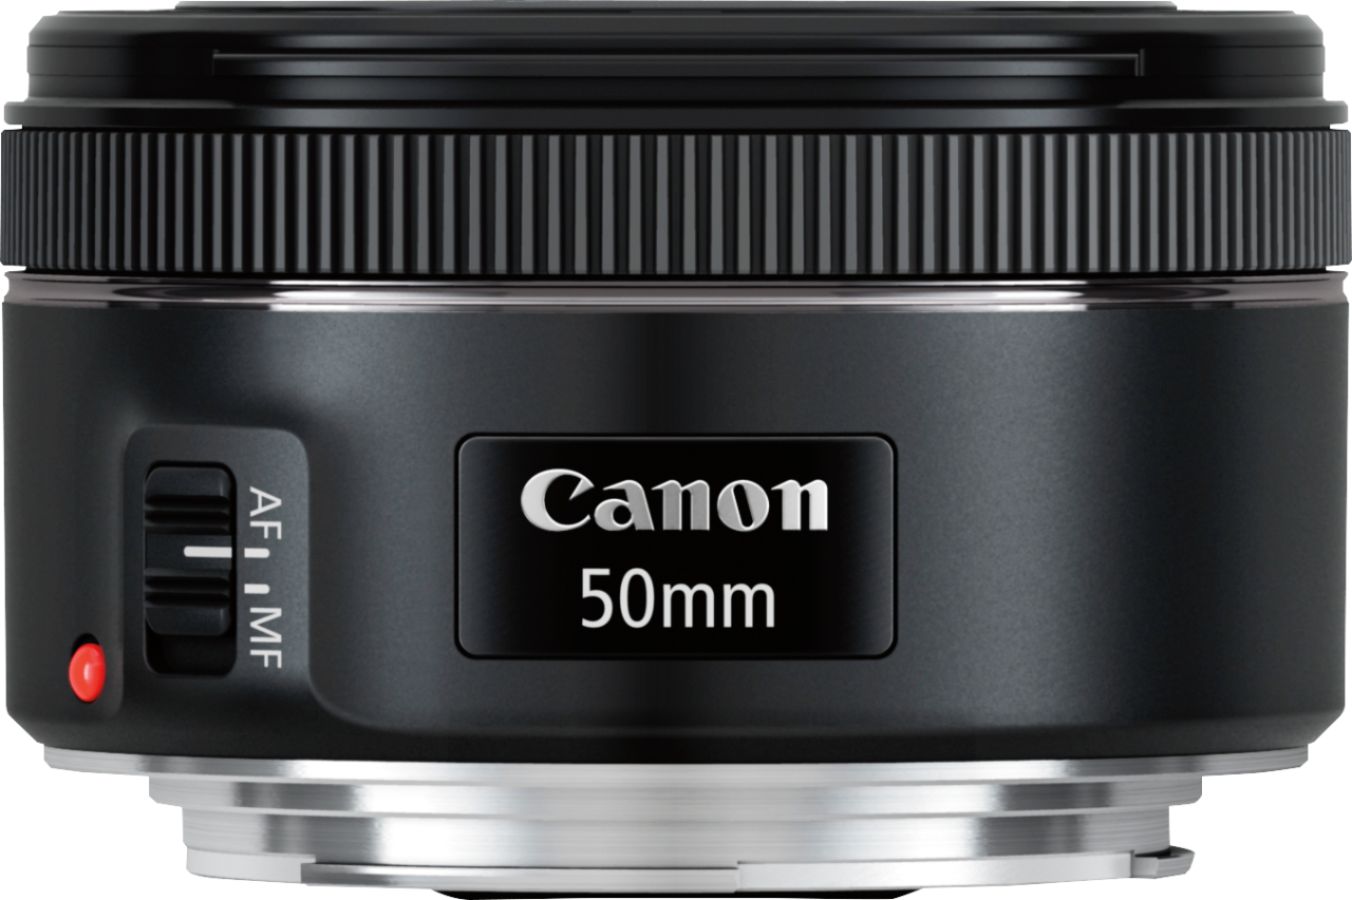 Canon EF50mm F1.8 STM Standard Prime Lens for EOS DSLR Cameras